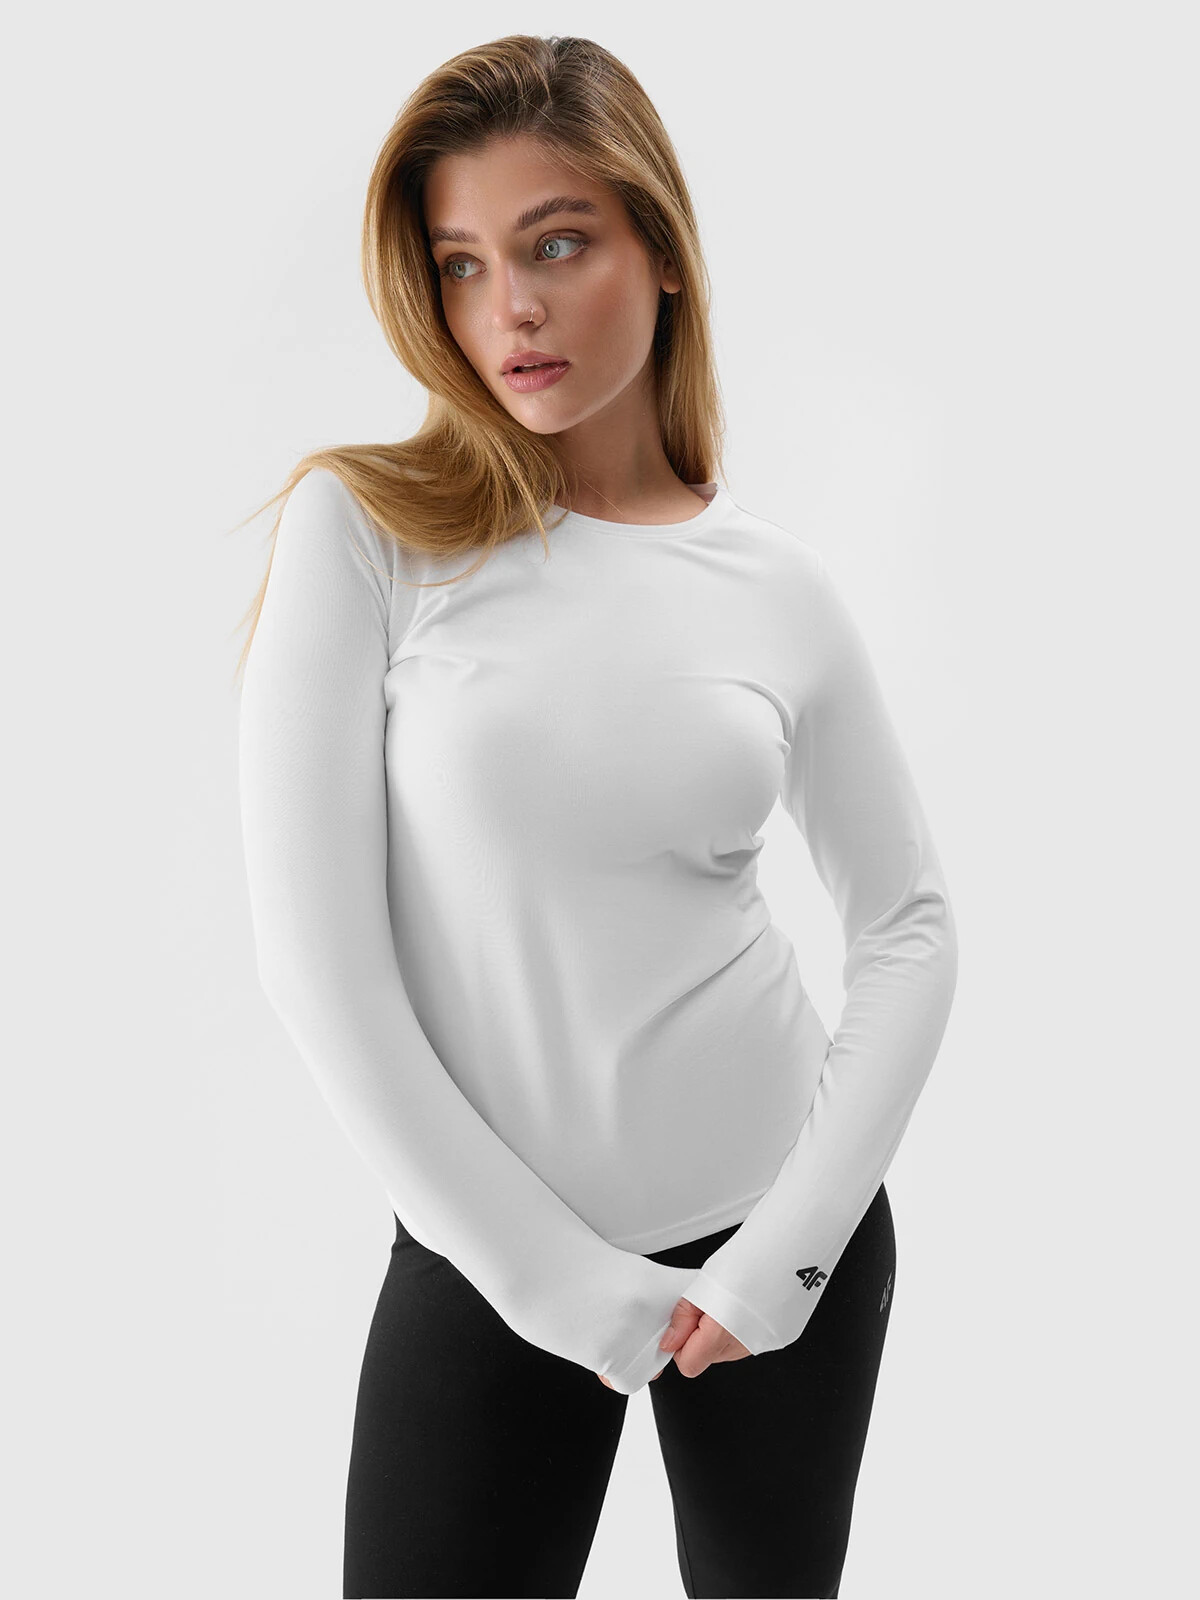 Women's Plain Long Sleeves T-Shirt 4F - White